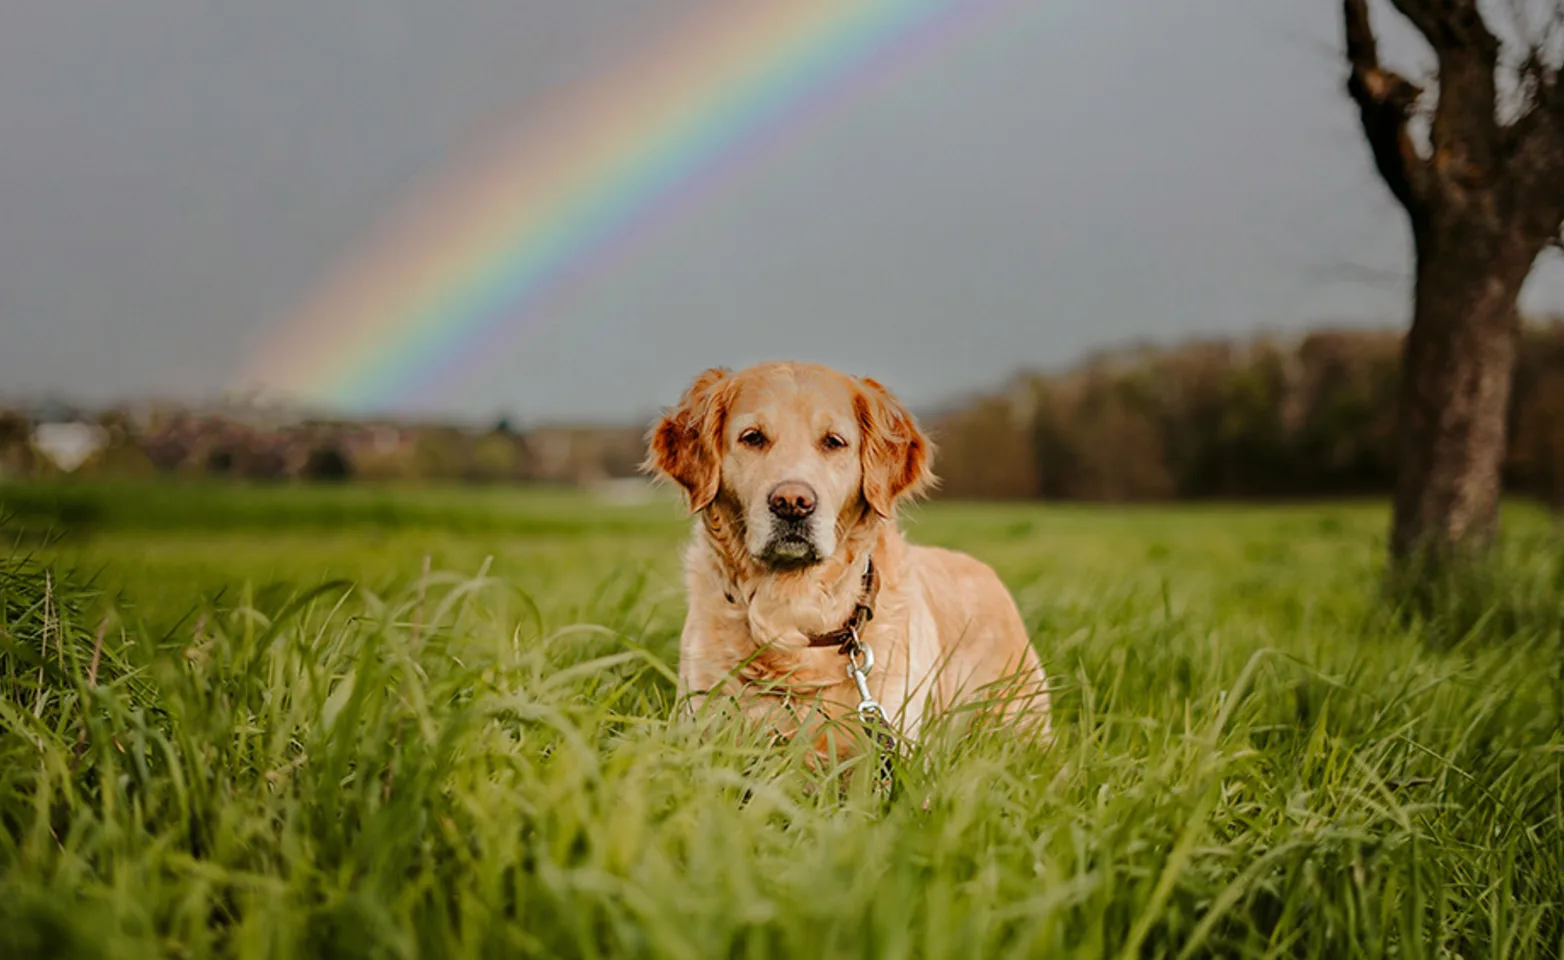 Dog sitting in grass under a rainbow